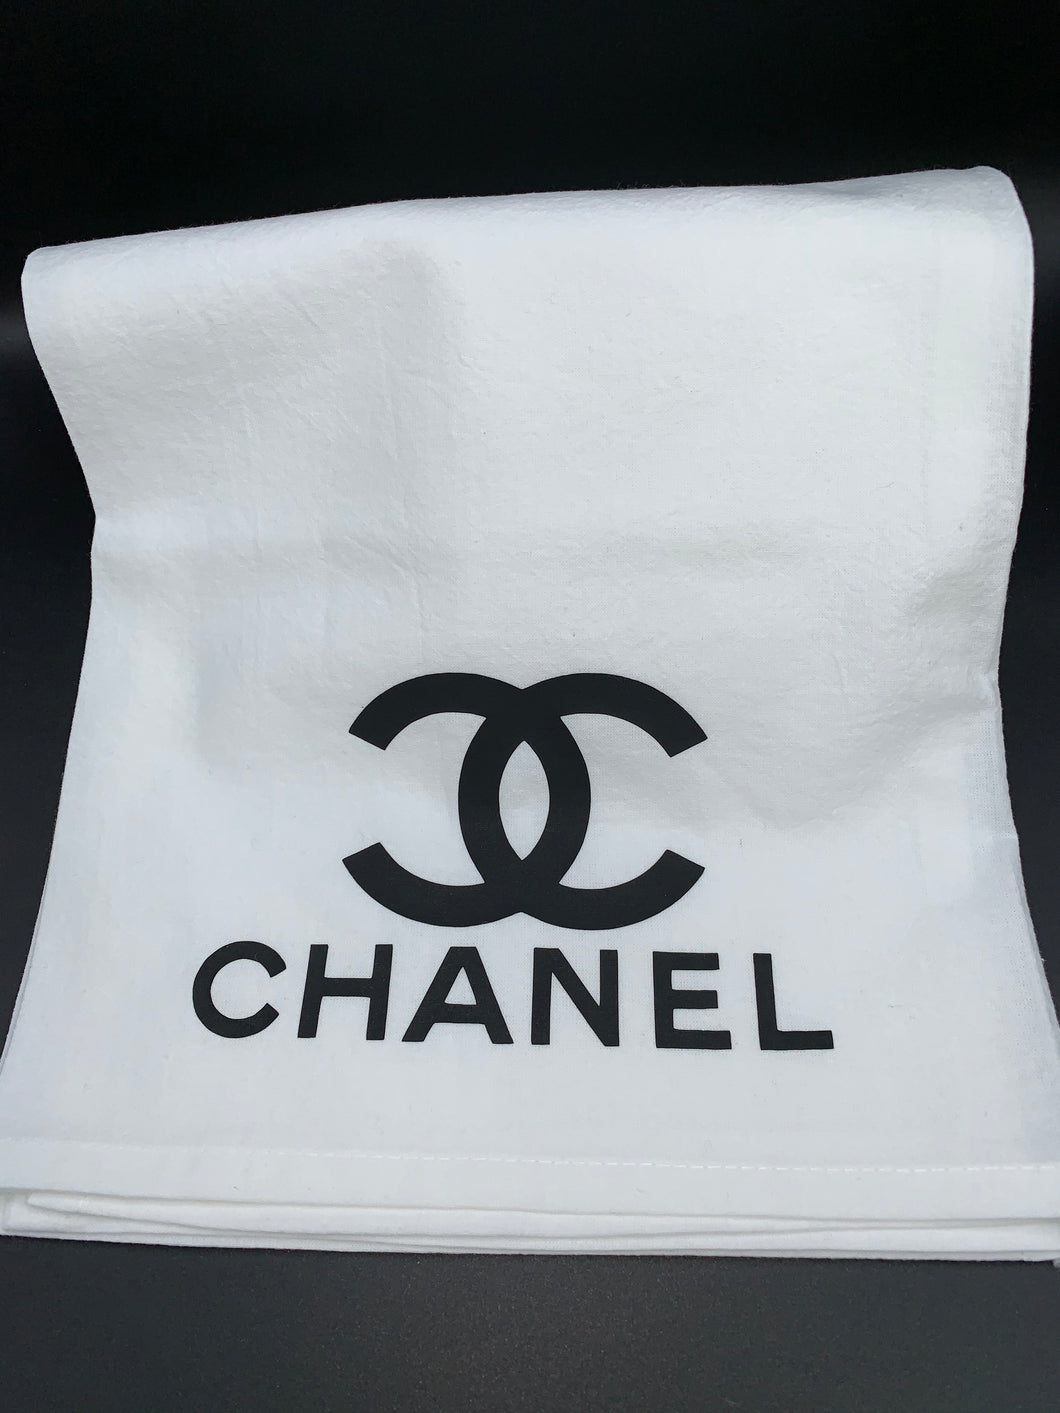 Chanel Inspired Dishtowel